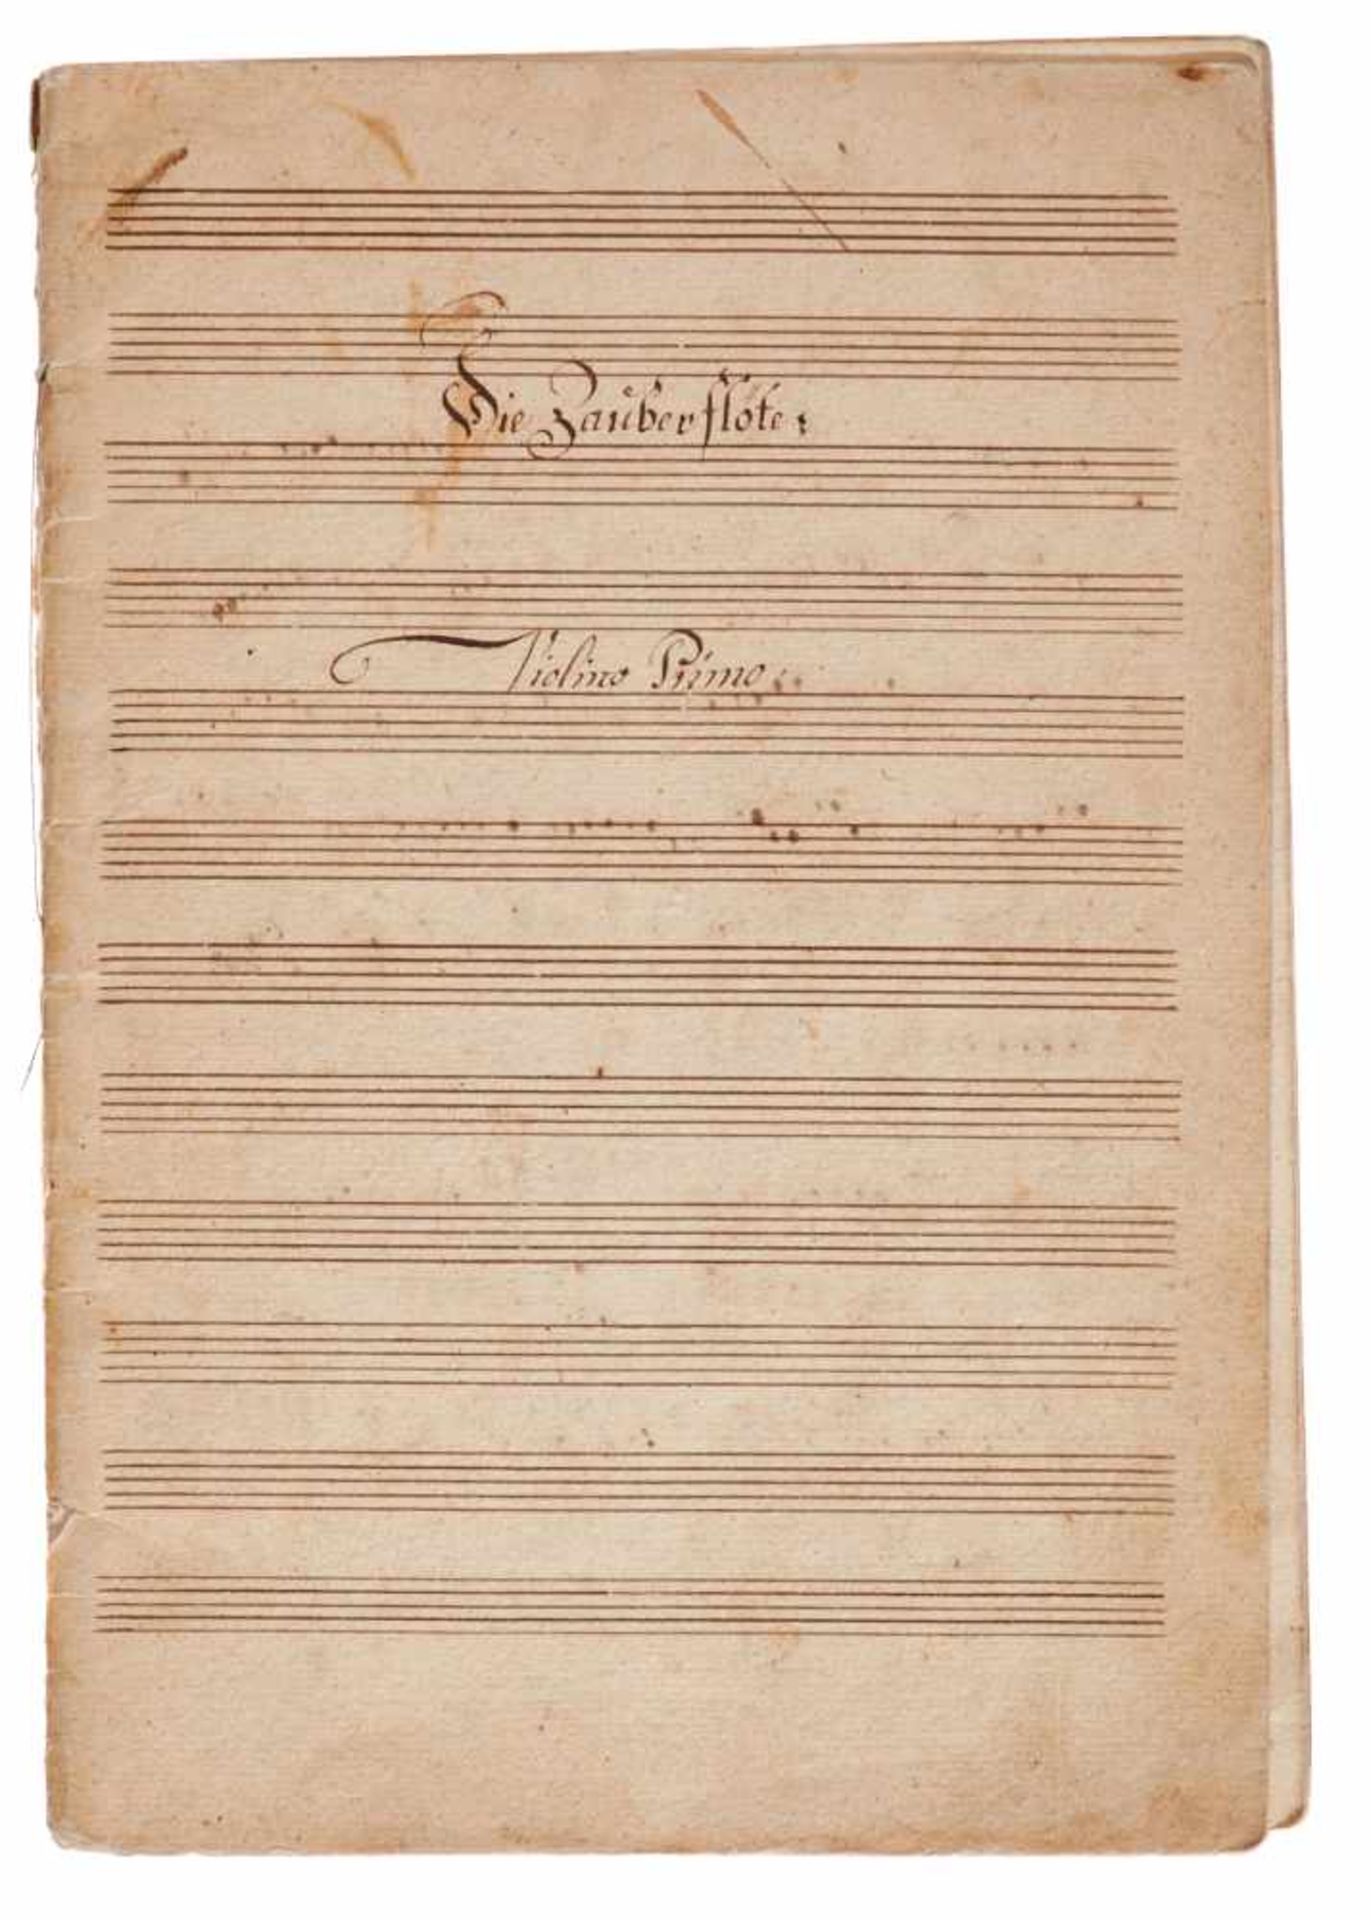 Mozart - "Die Zauberflöte".Deutsche Notenhandschrift auf Papier. 4 Hefte. Um 1800. Fol. 11; 12;